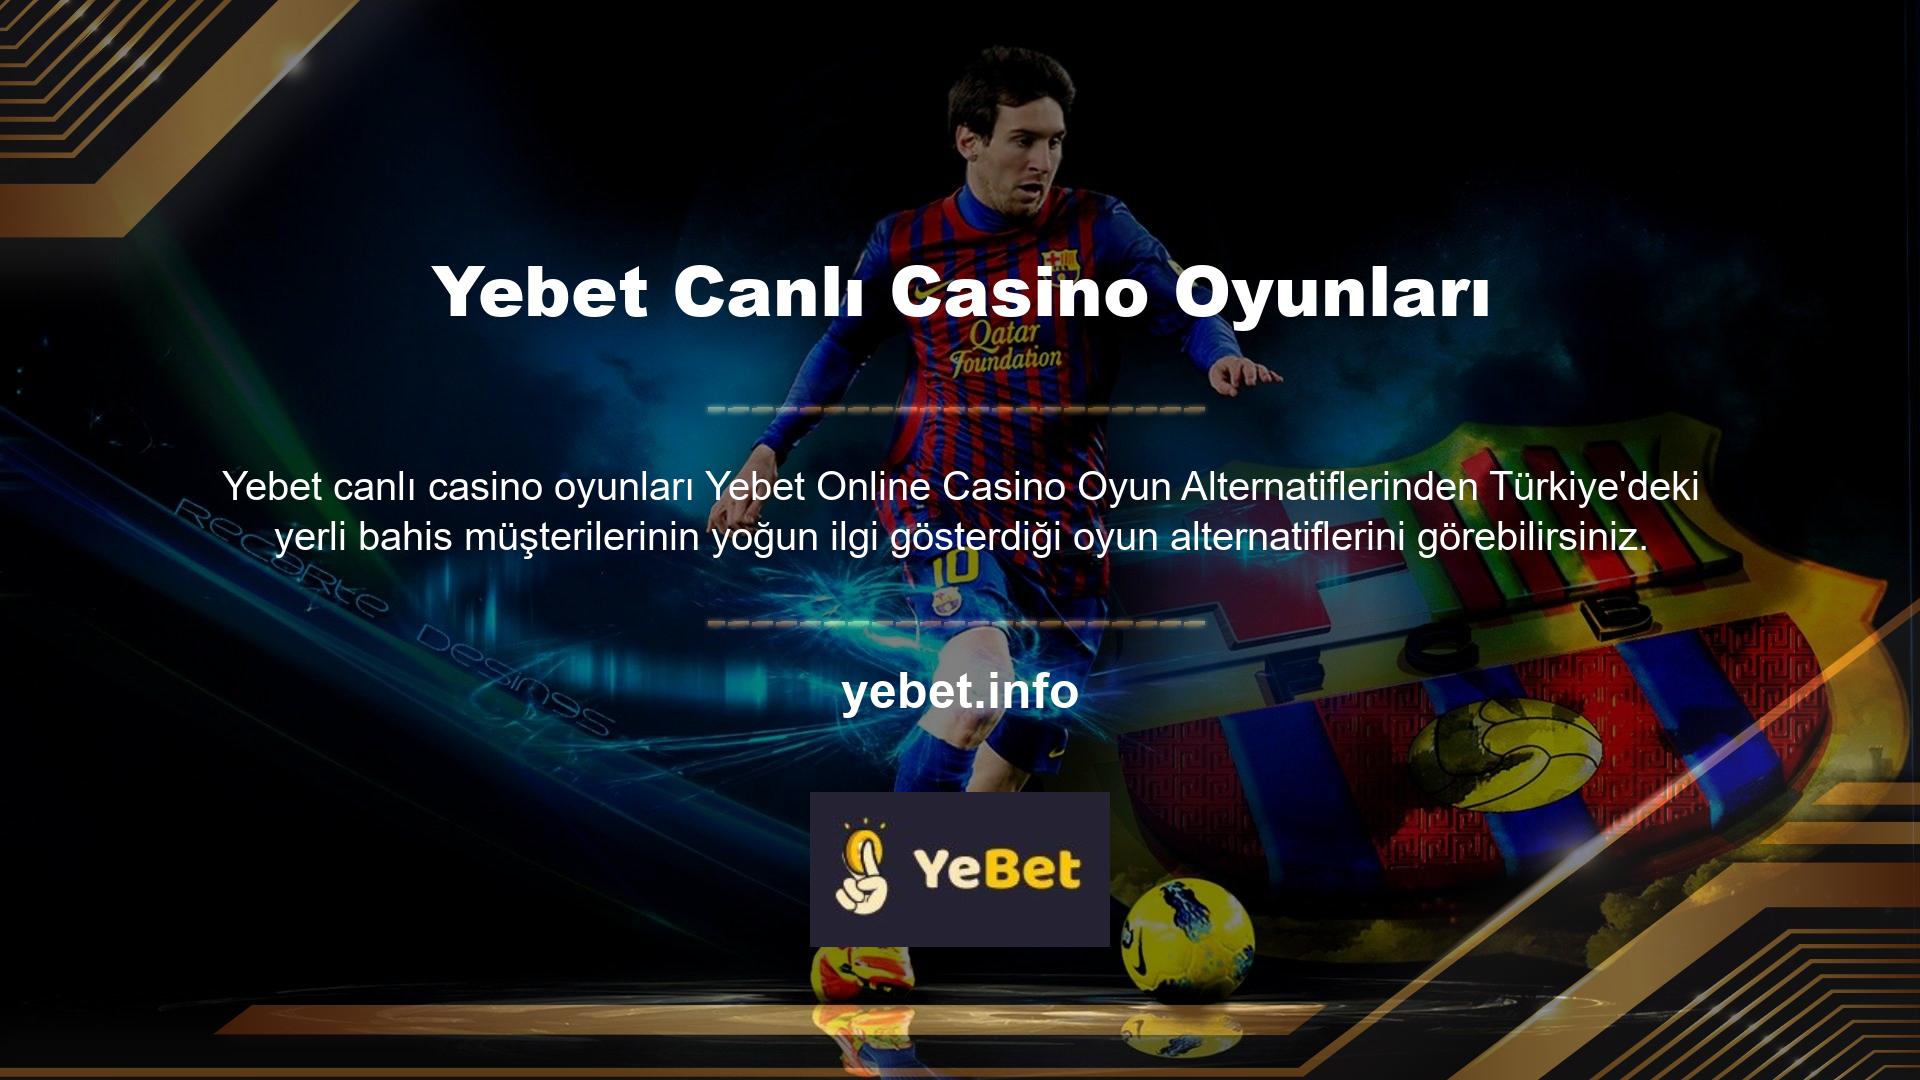 Kazı kazan, okey, tavla, loto ve loto oyunlarının yanı sıra Yebet Online Gaming müşterilerinin sitede 7/24 oynayabileceği ve ek bahis kazanabileceği en popüler casino oyunlarından bazıları şunlardır